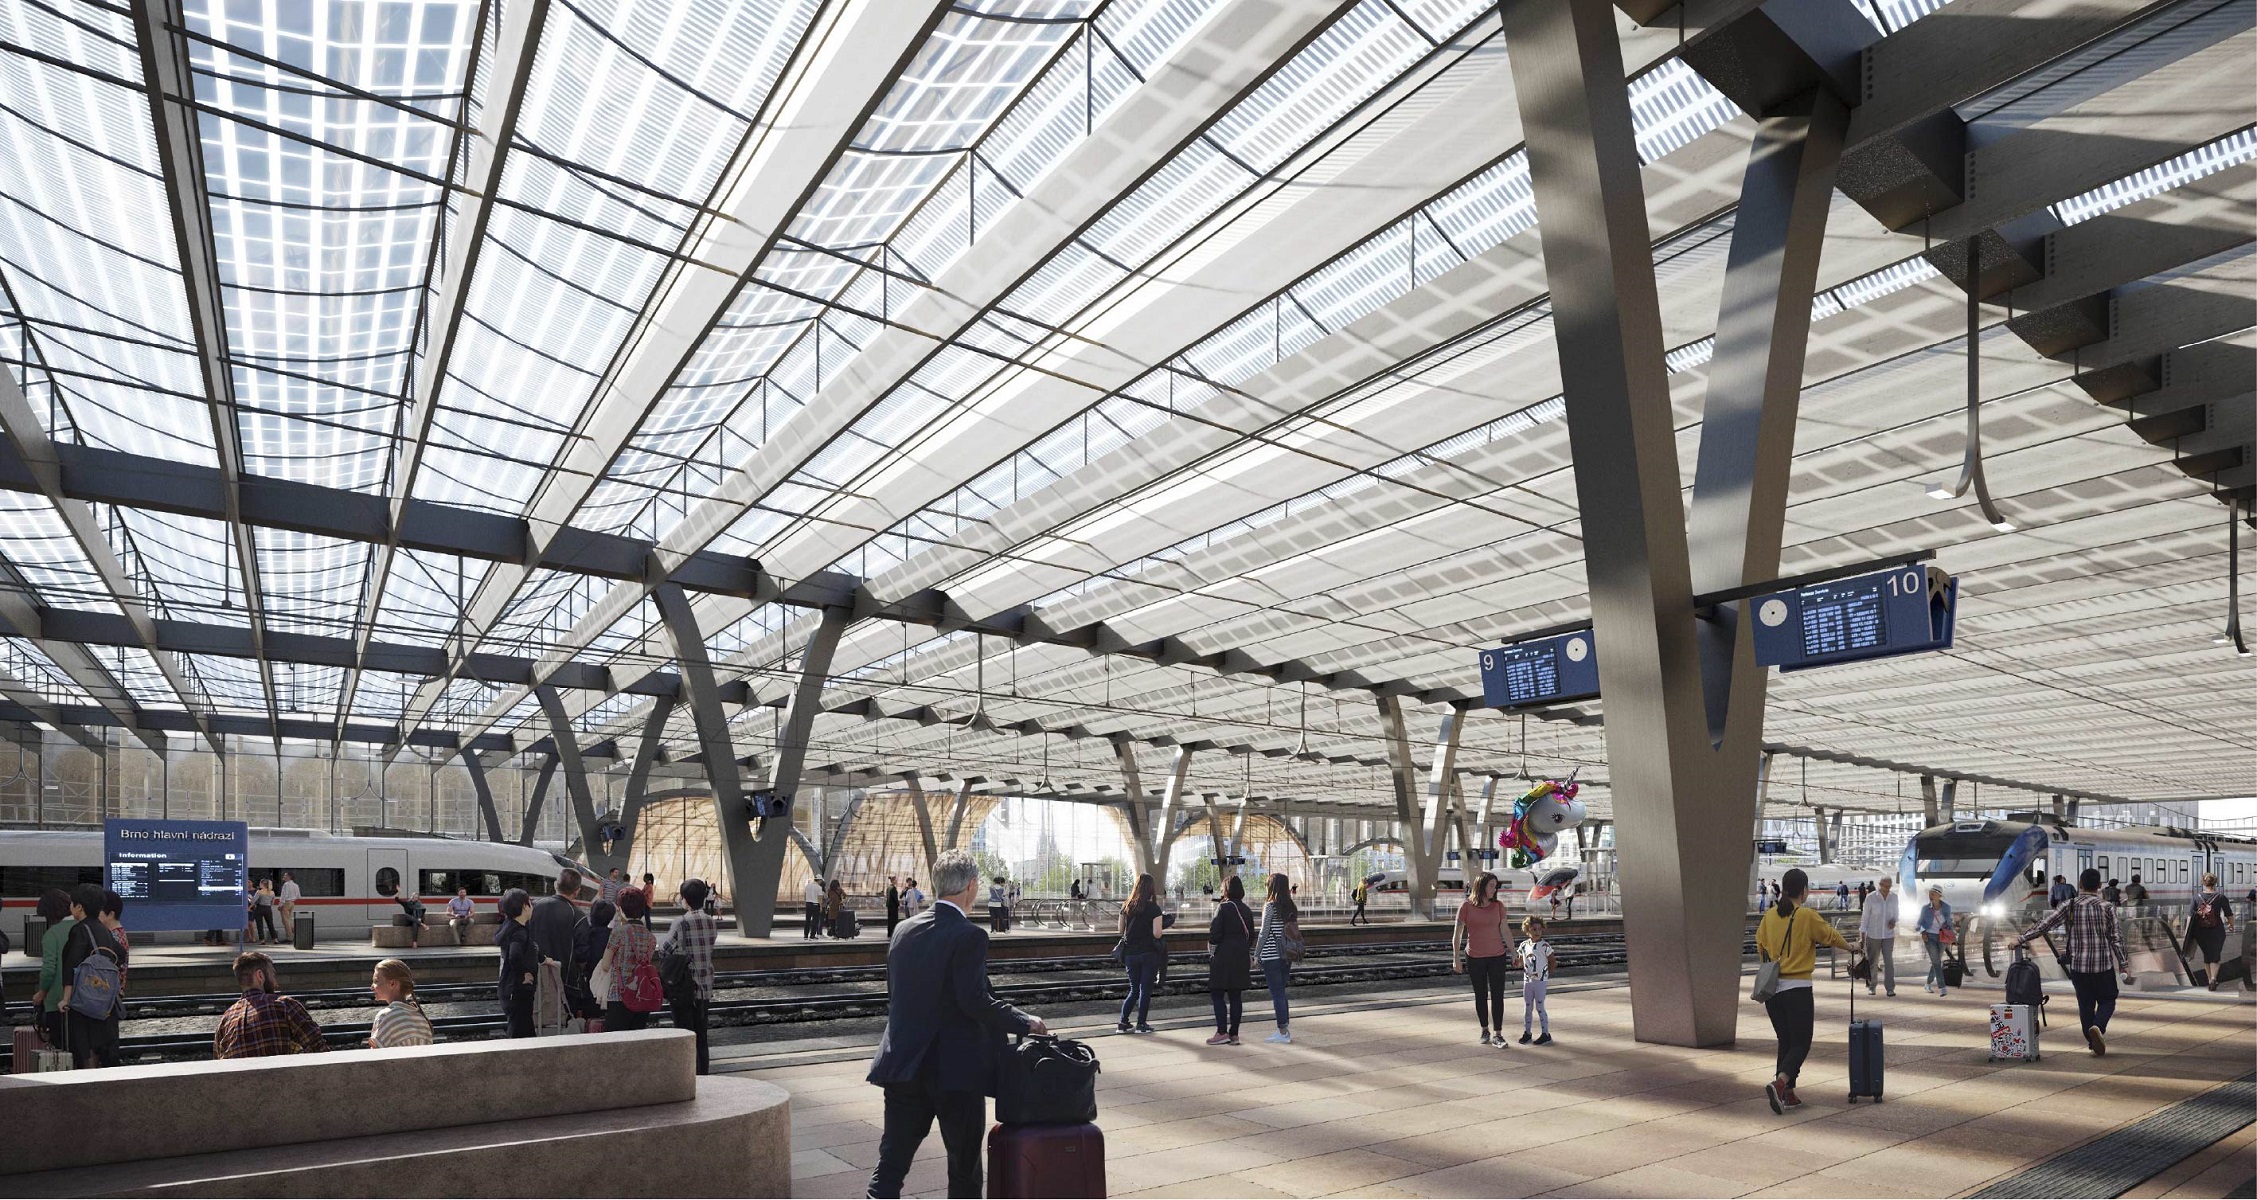 Víťazný návrh kladie dôraz na vytvorenie reprezentatívnej budovy, ktorá posiluje identitu mesta Brna a ponúka komfort pre cestujúcich